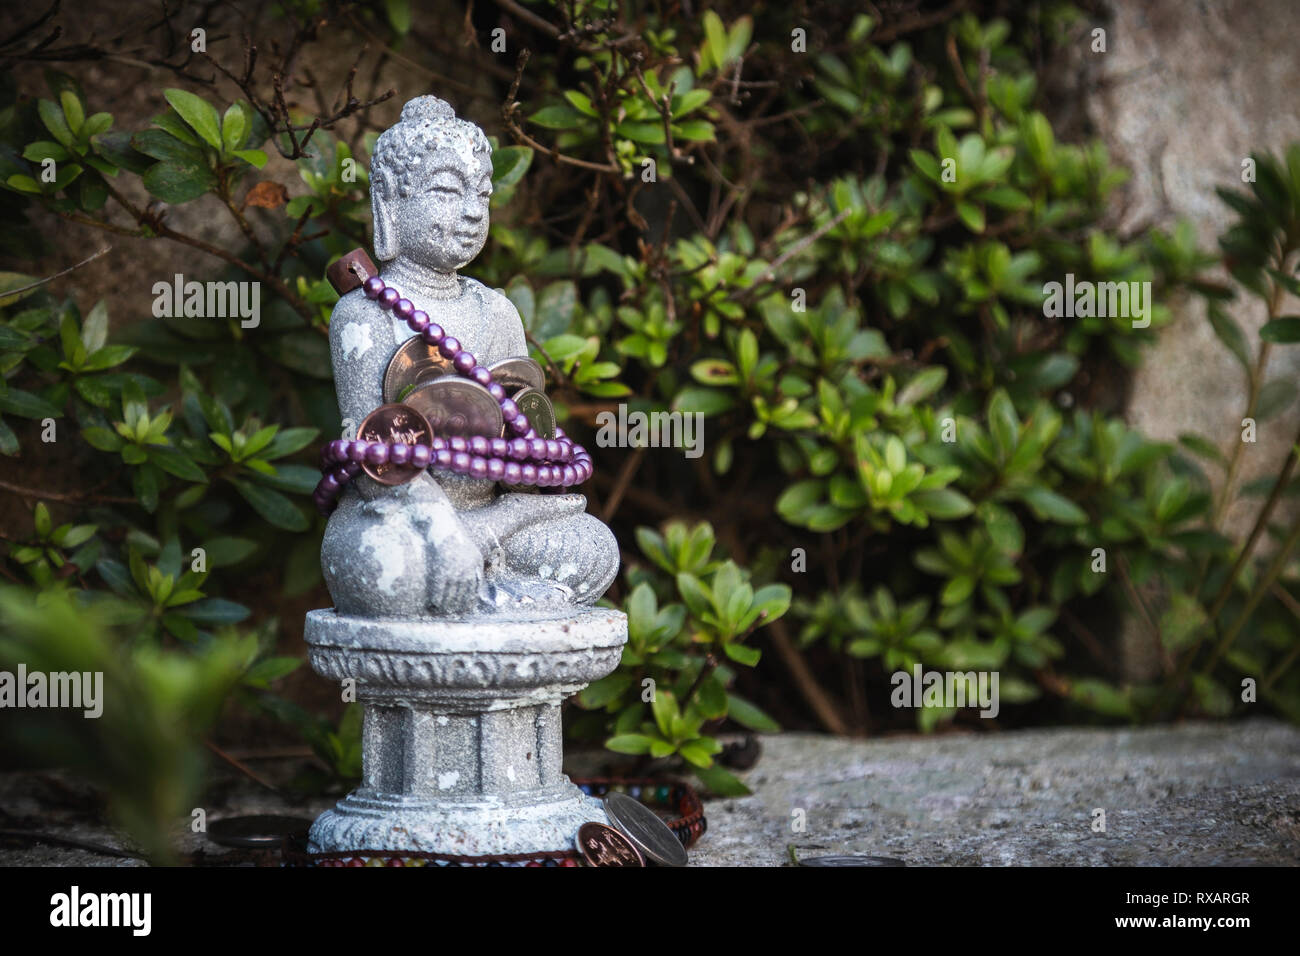 Close-up of Buddha statue contre des arbres Banque D'Images